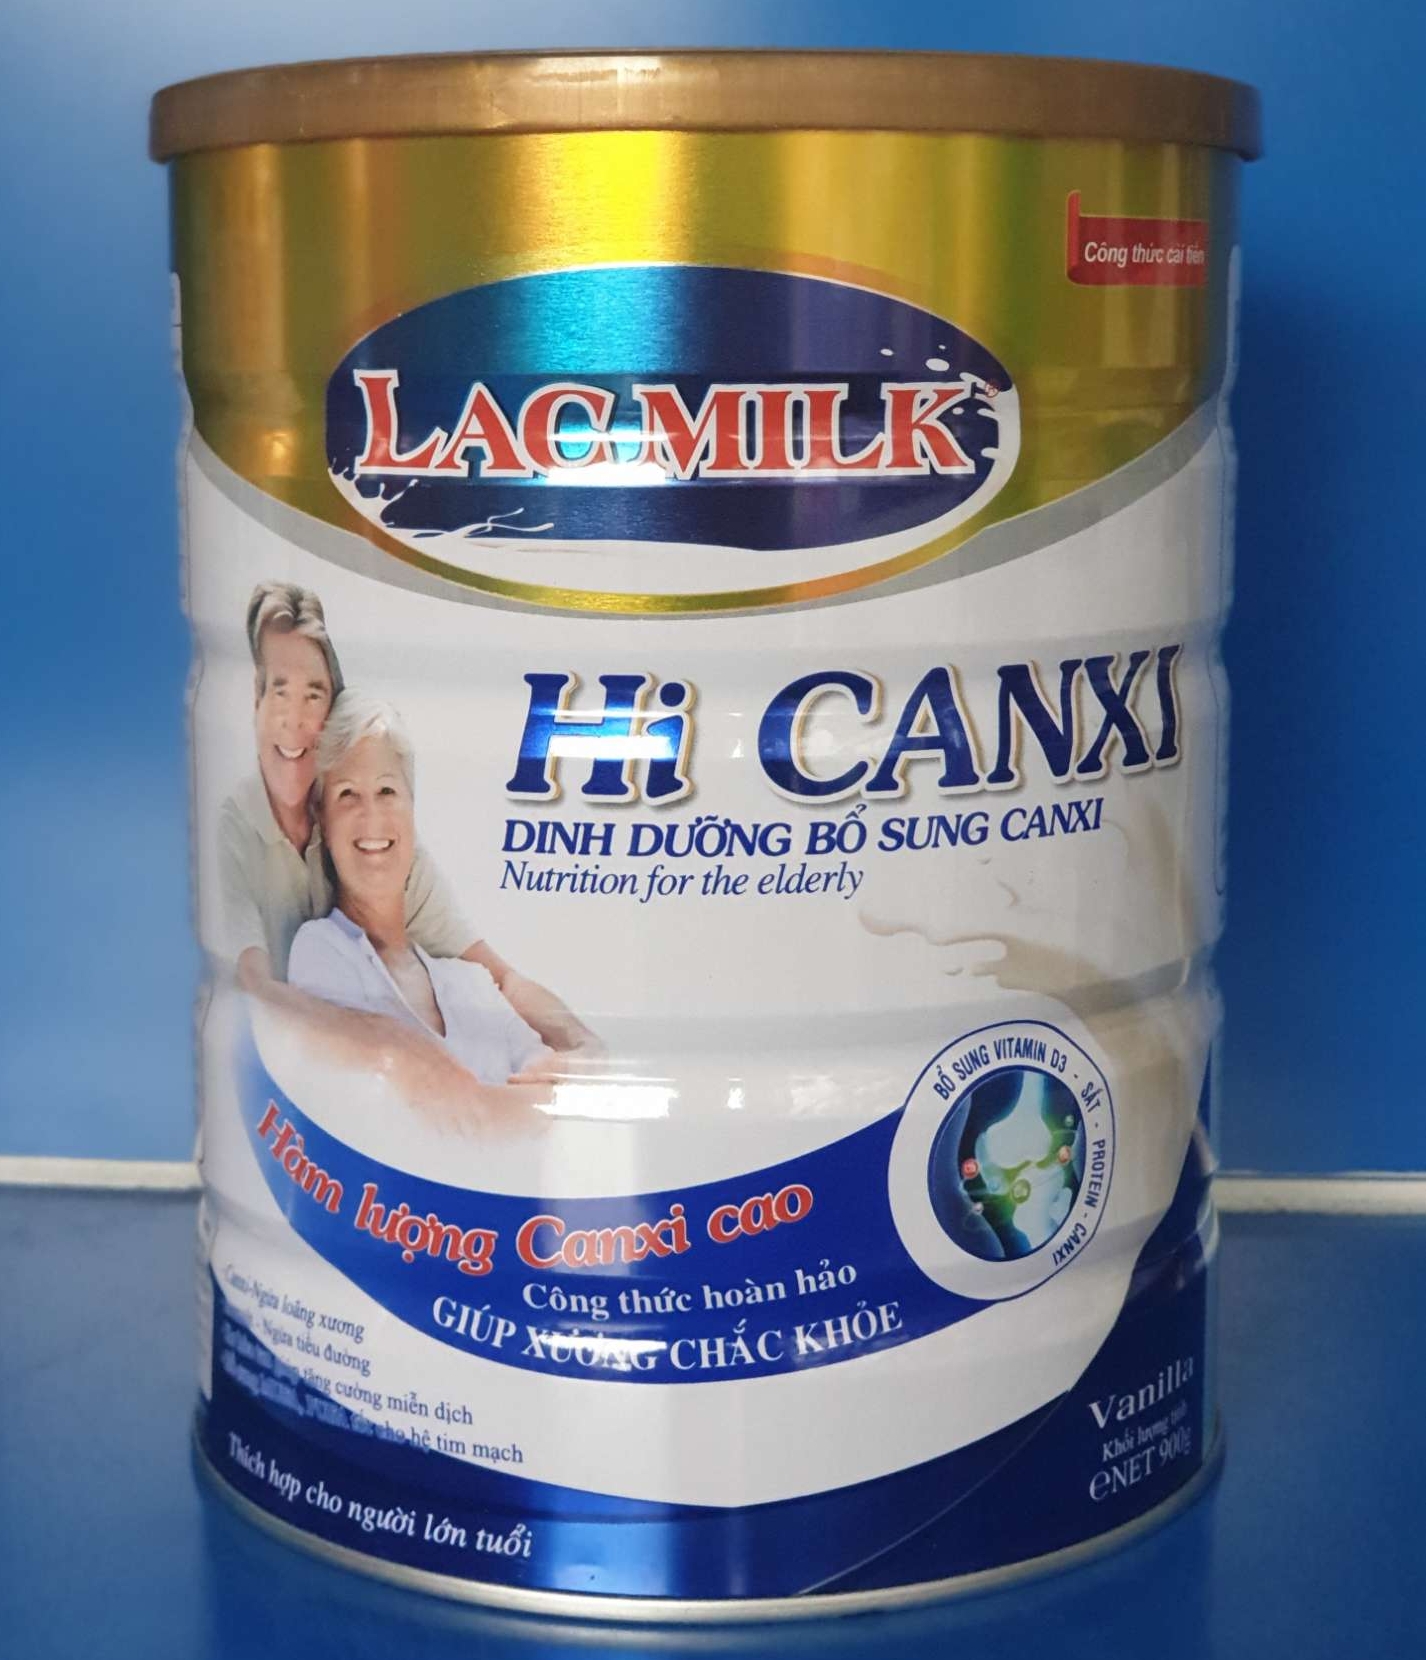 Sữa bột LacMilk Hi Canxi -Bổ sung can xi, phòng ngừa tiểu đường 900g